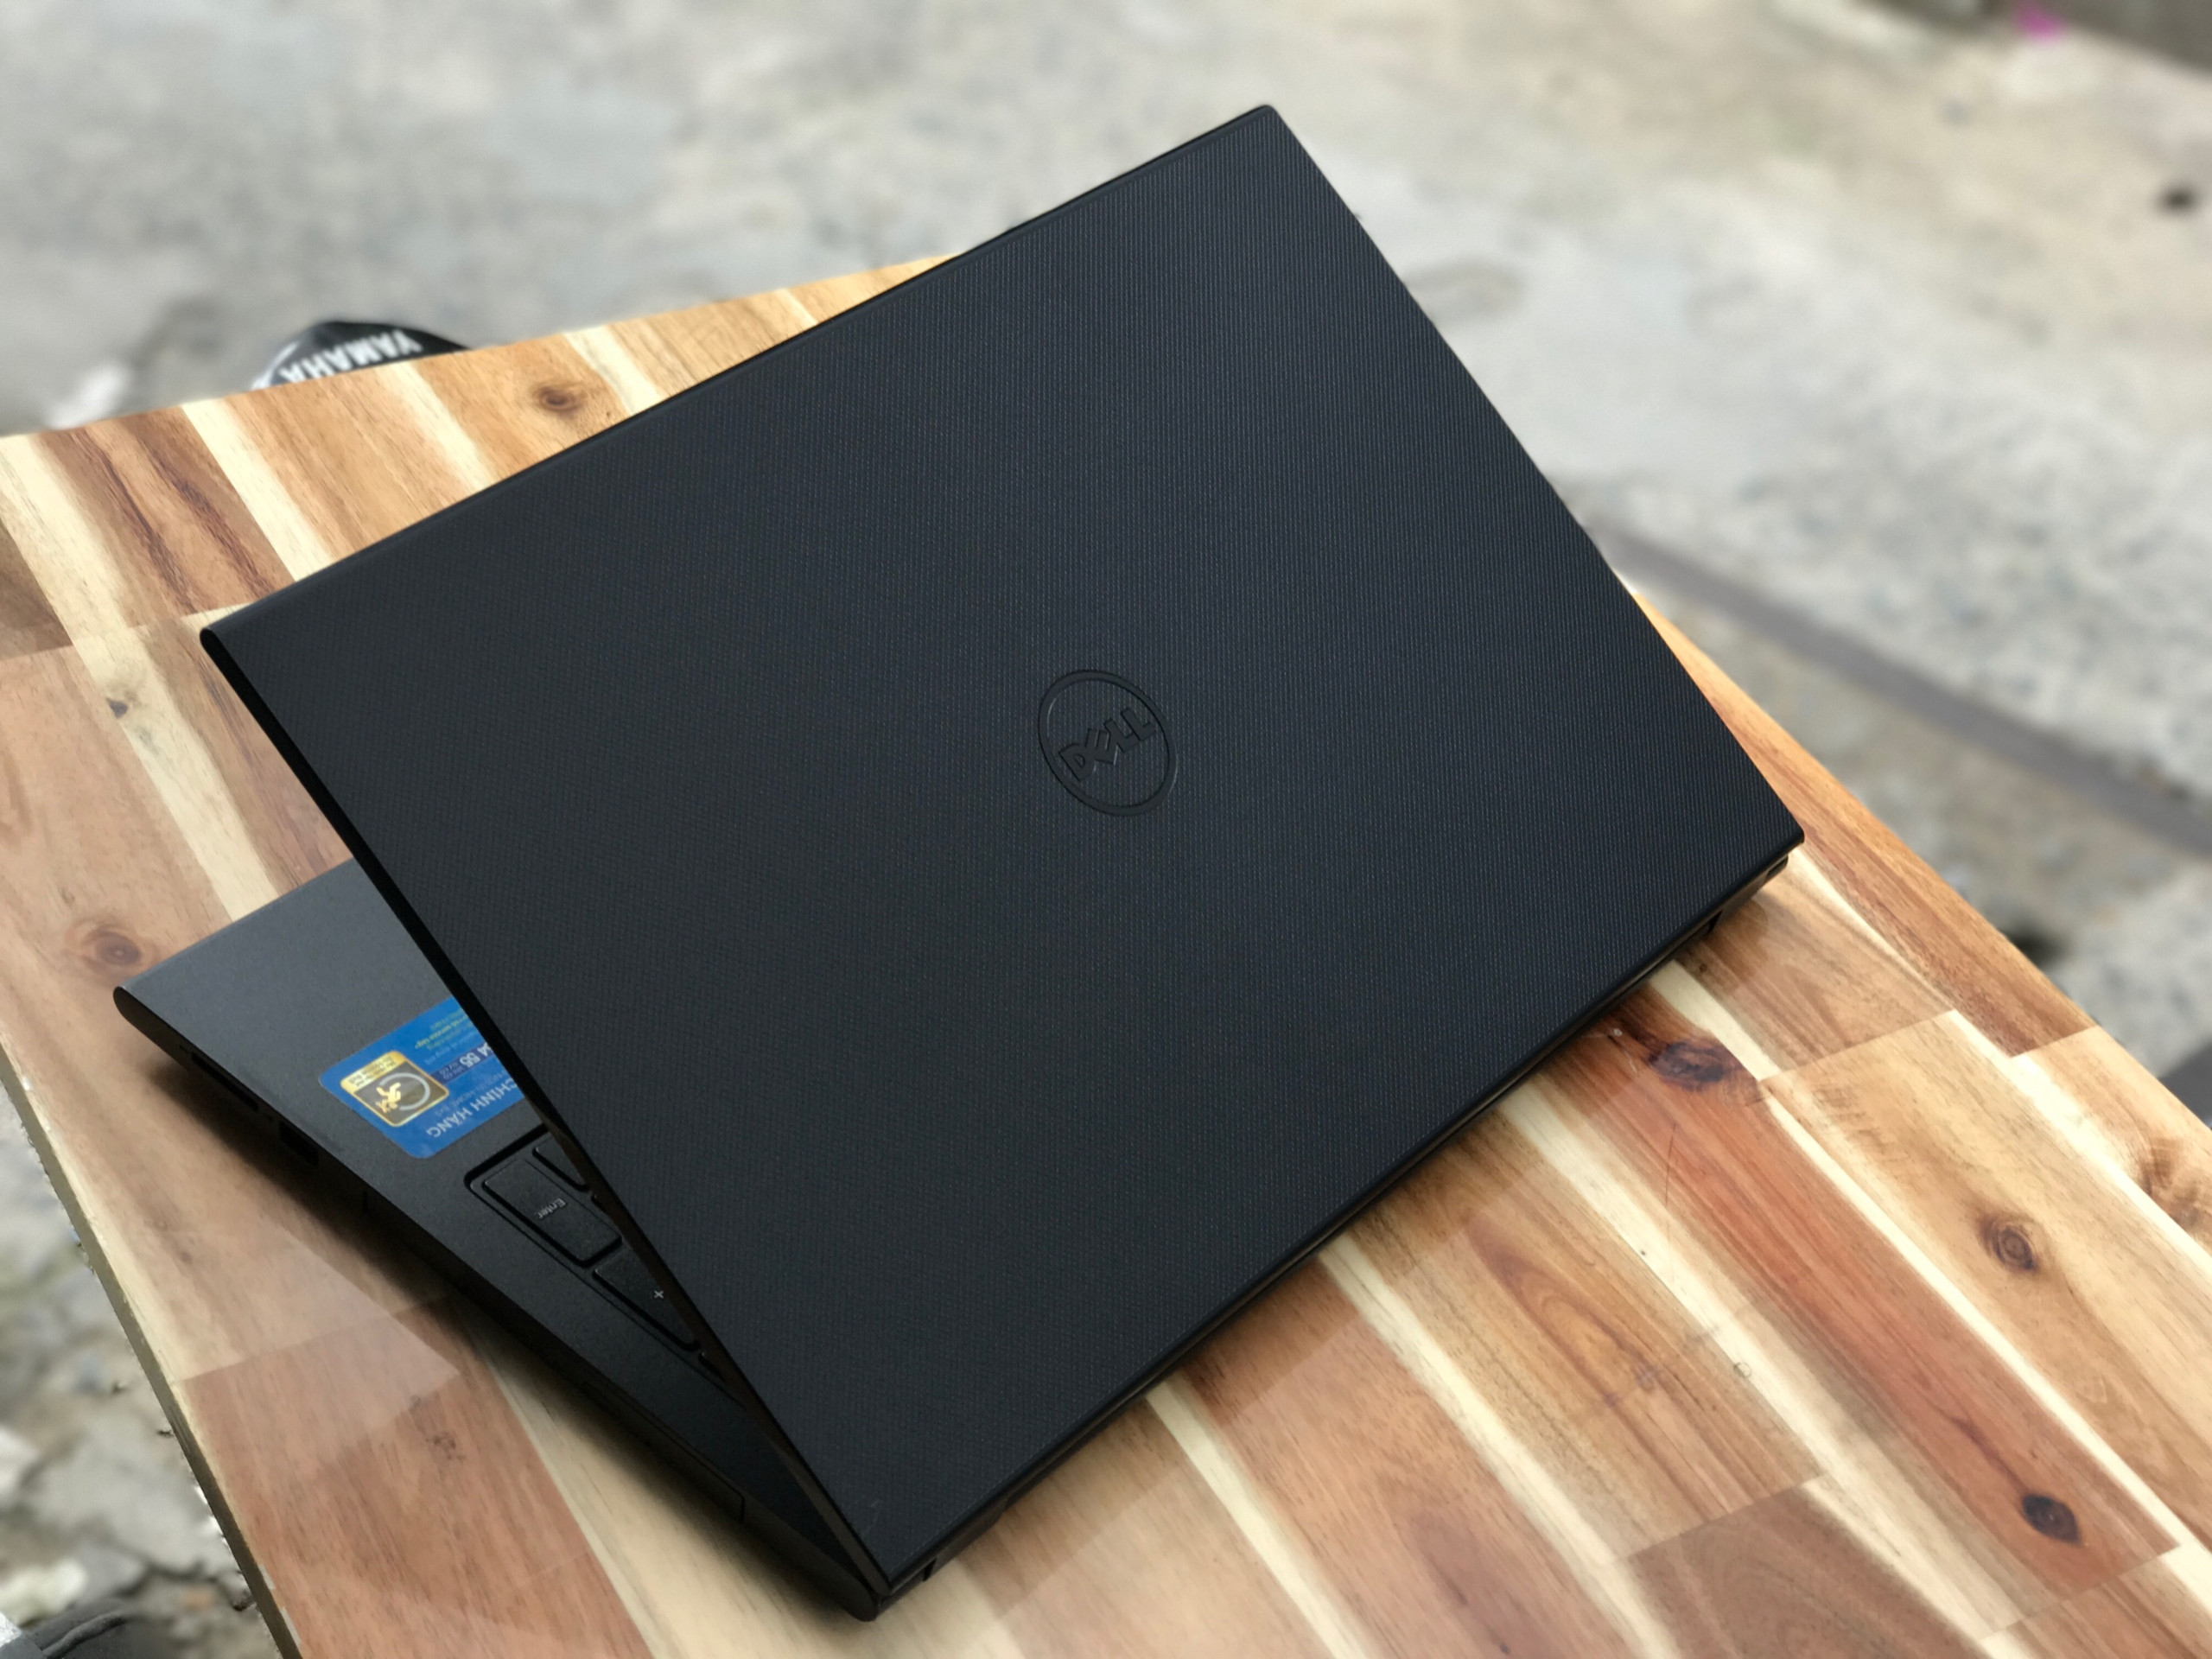 Laptop Dell Inspiron 3542, i3 4005U 4G 500G Vga Nvidia GT820M  đẹp zin 100% Giá rẻ1